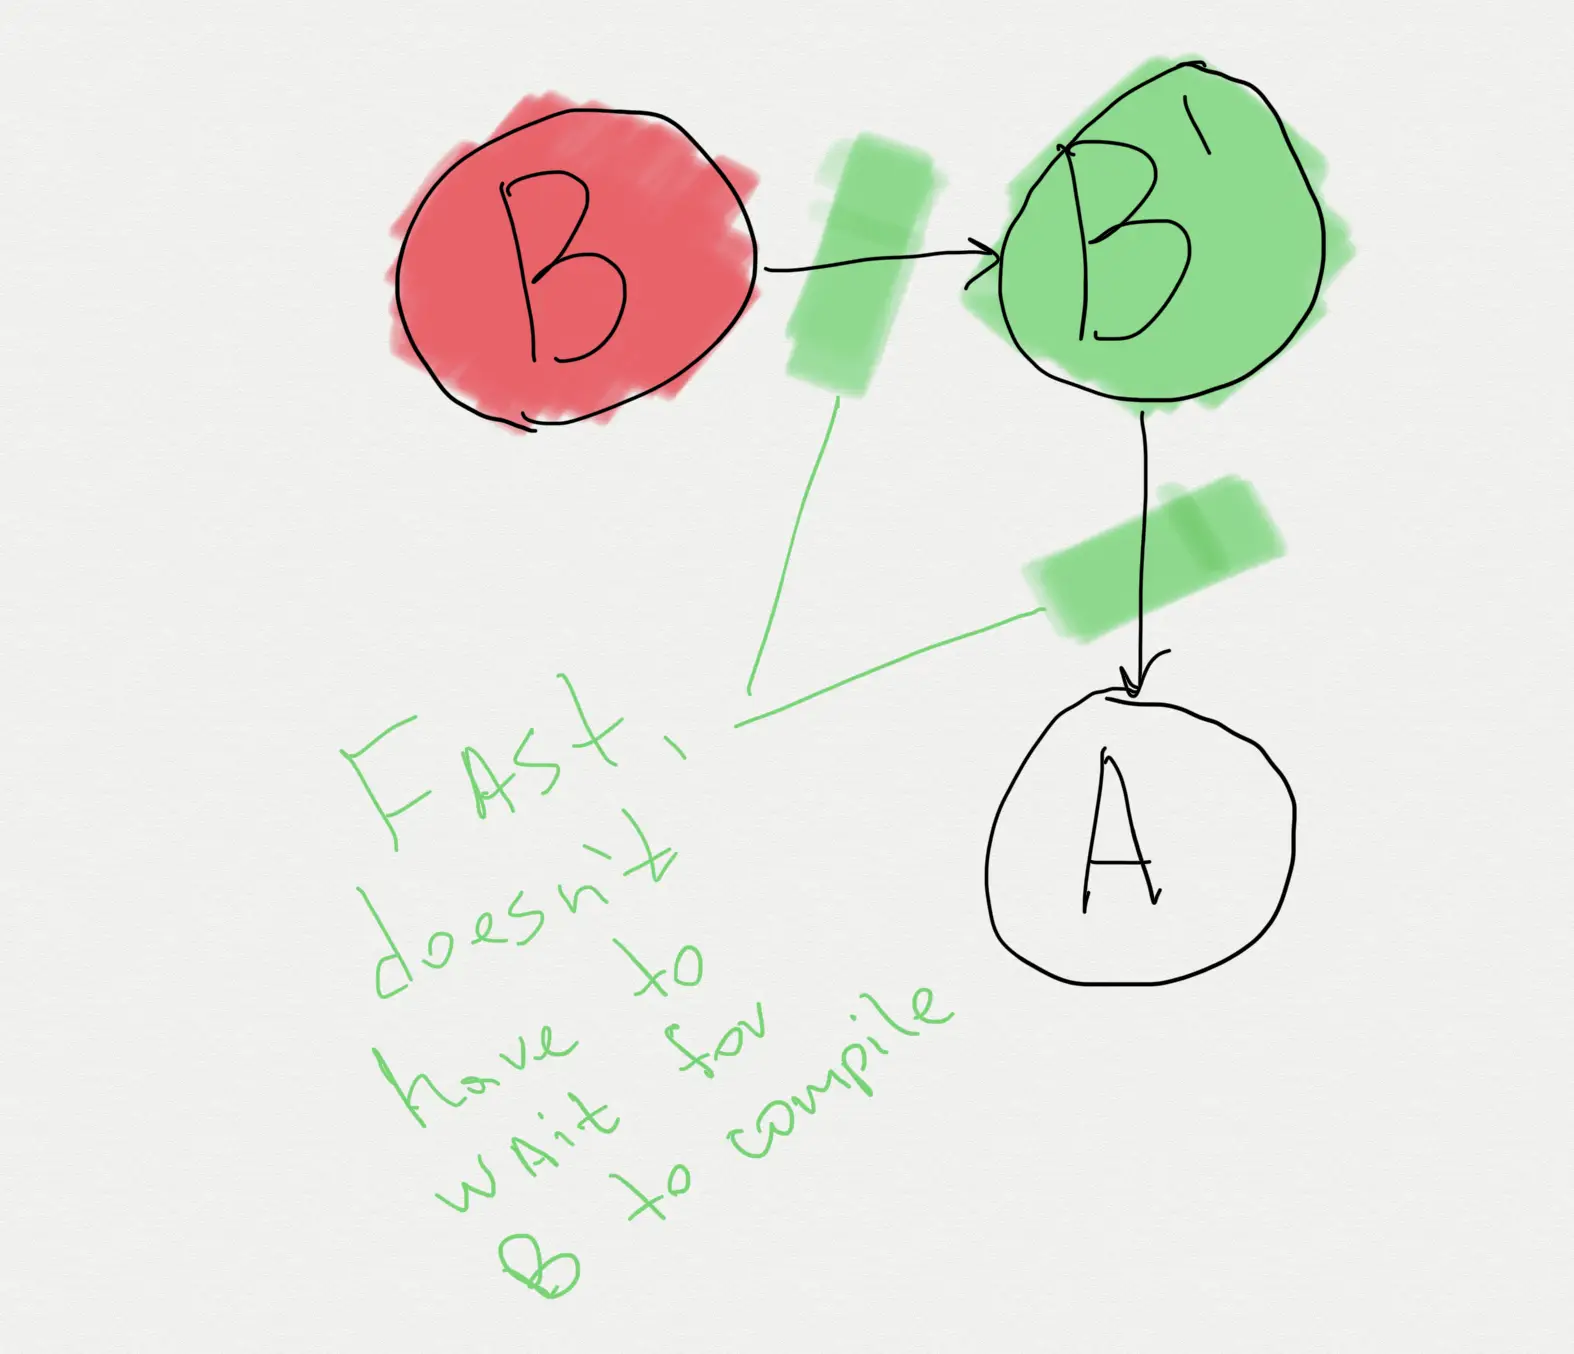 B->B'->A